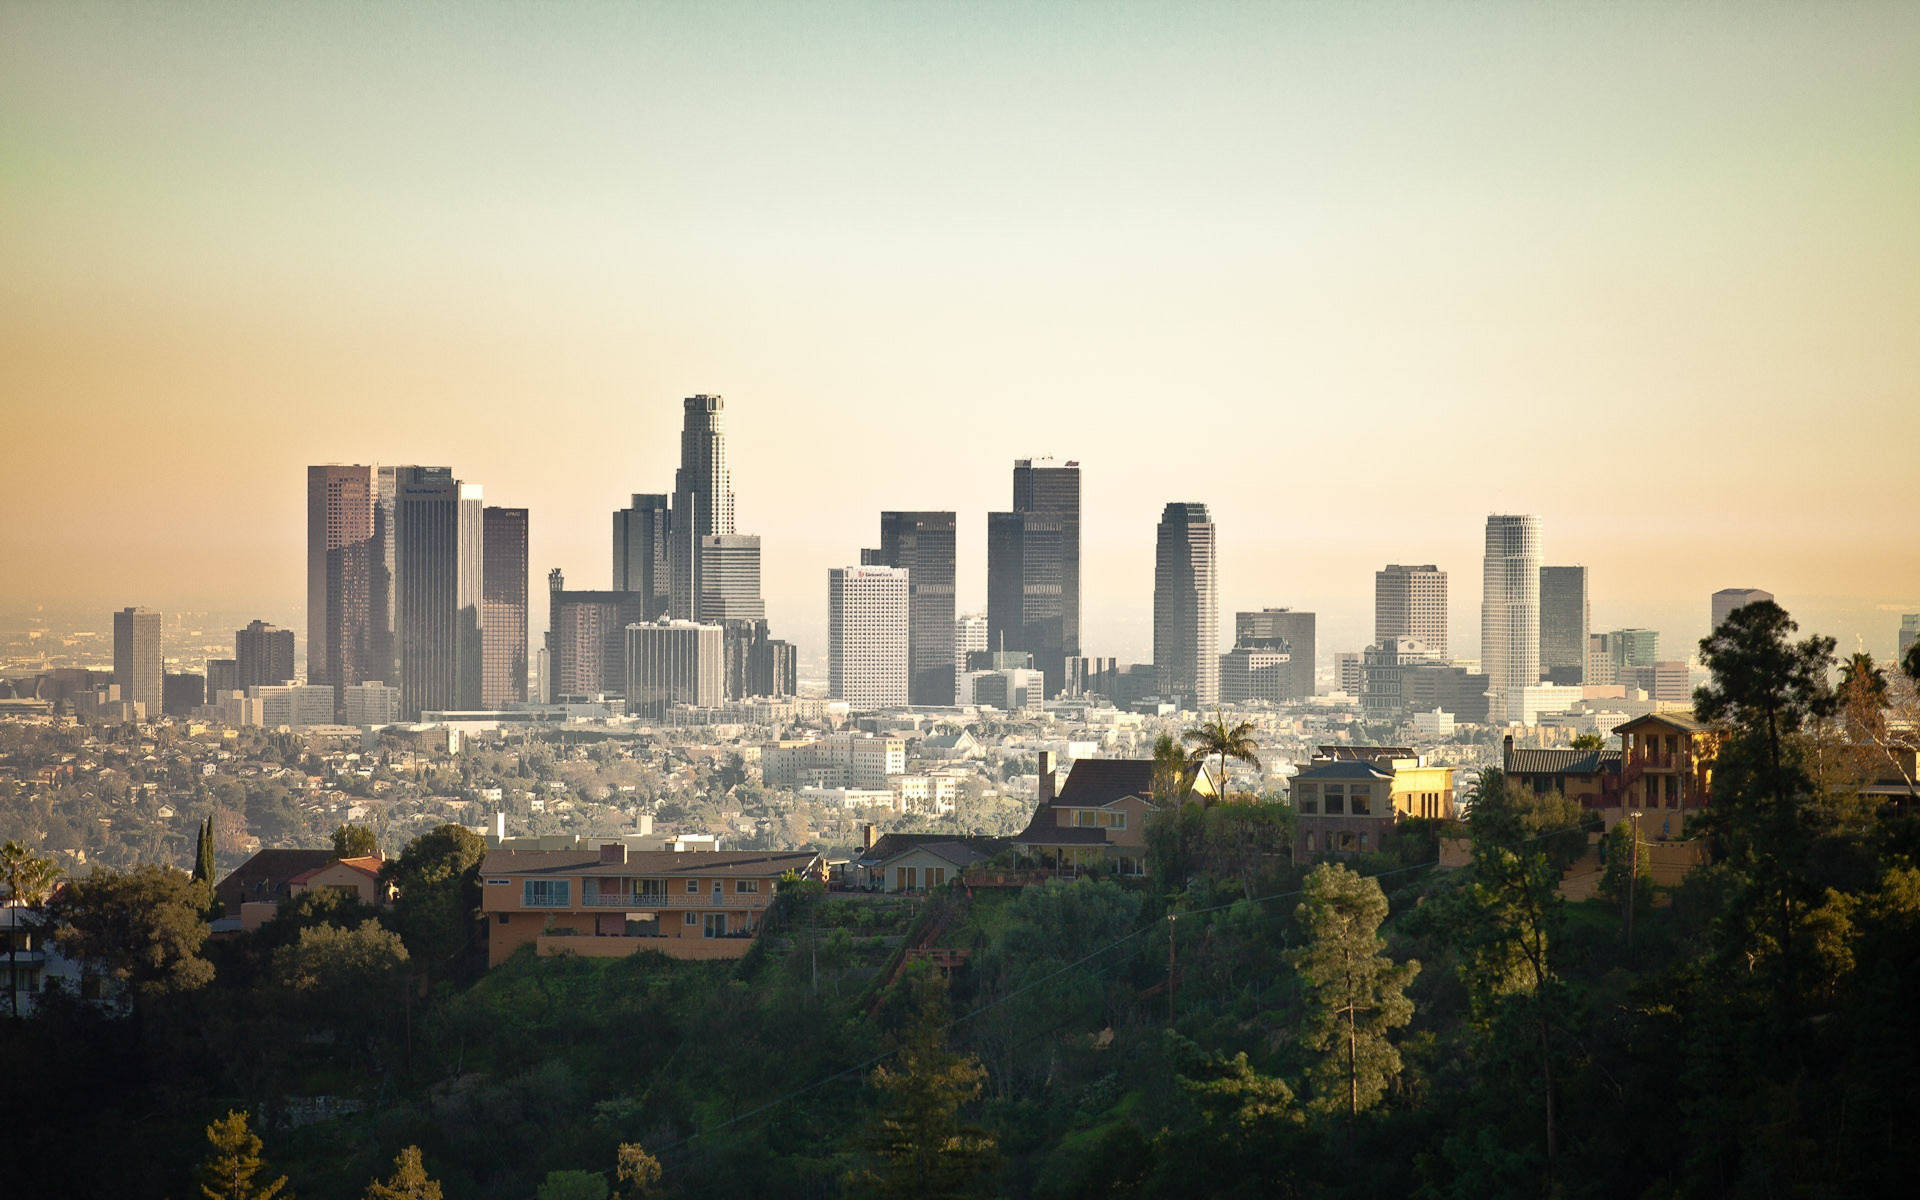 Neighborhoods And Buildings In Los Angeles 4k